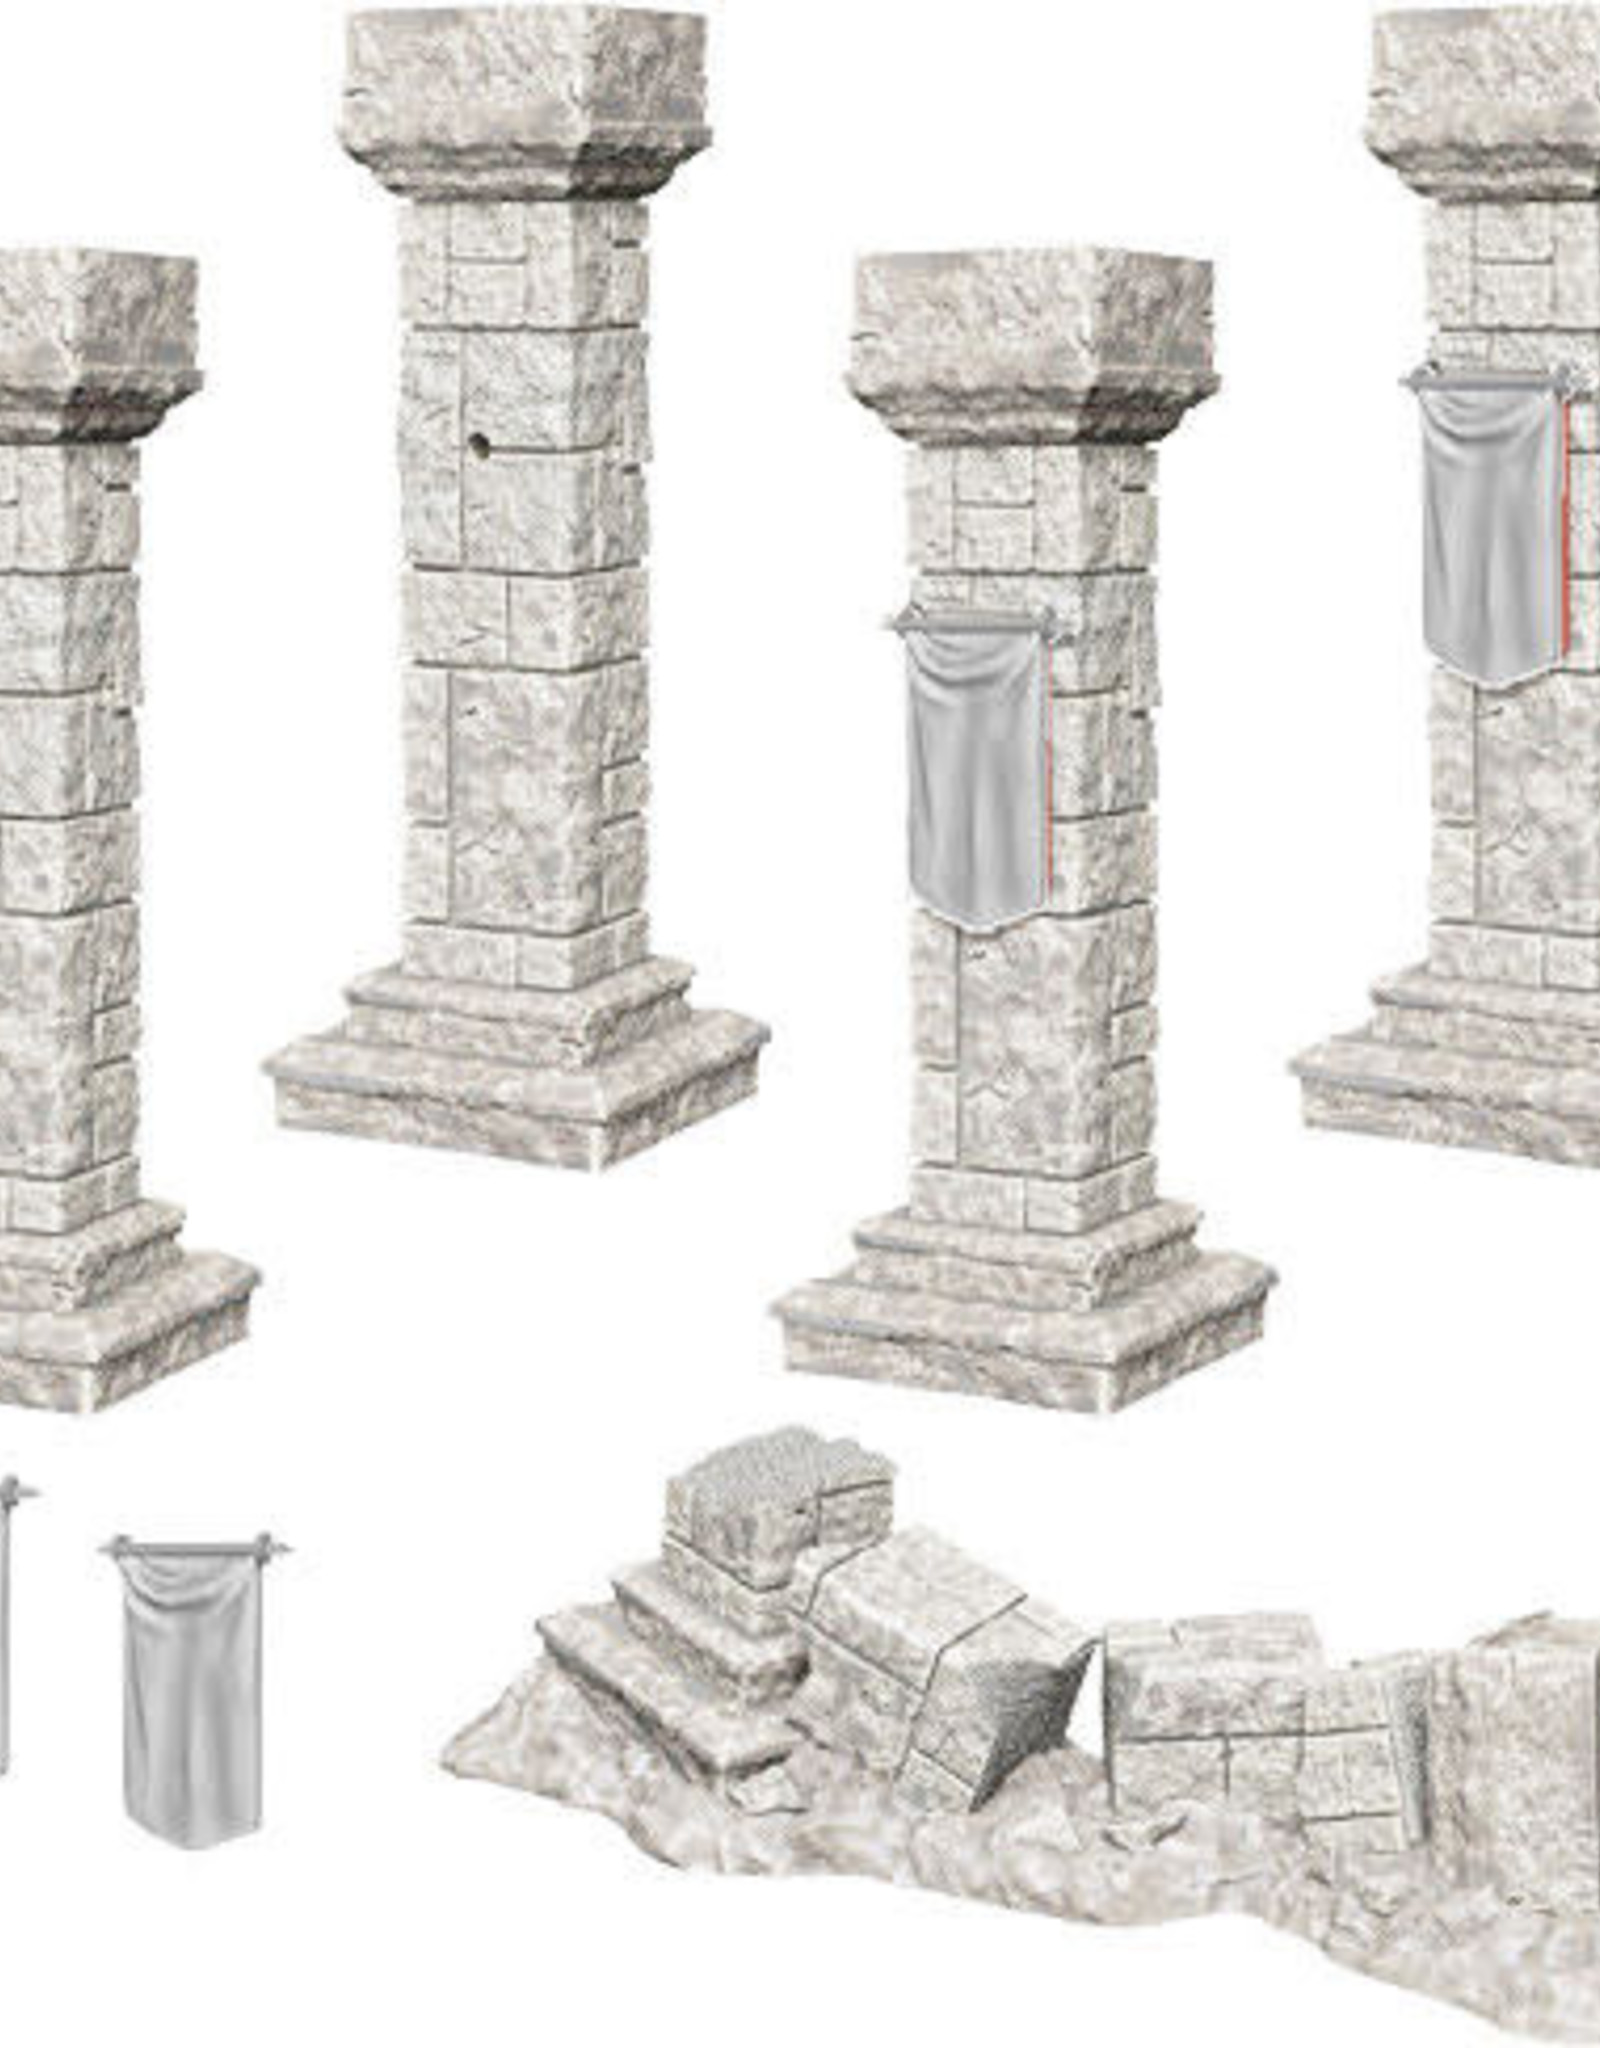 Wizkids Deep Cuts: Pillars and Banners